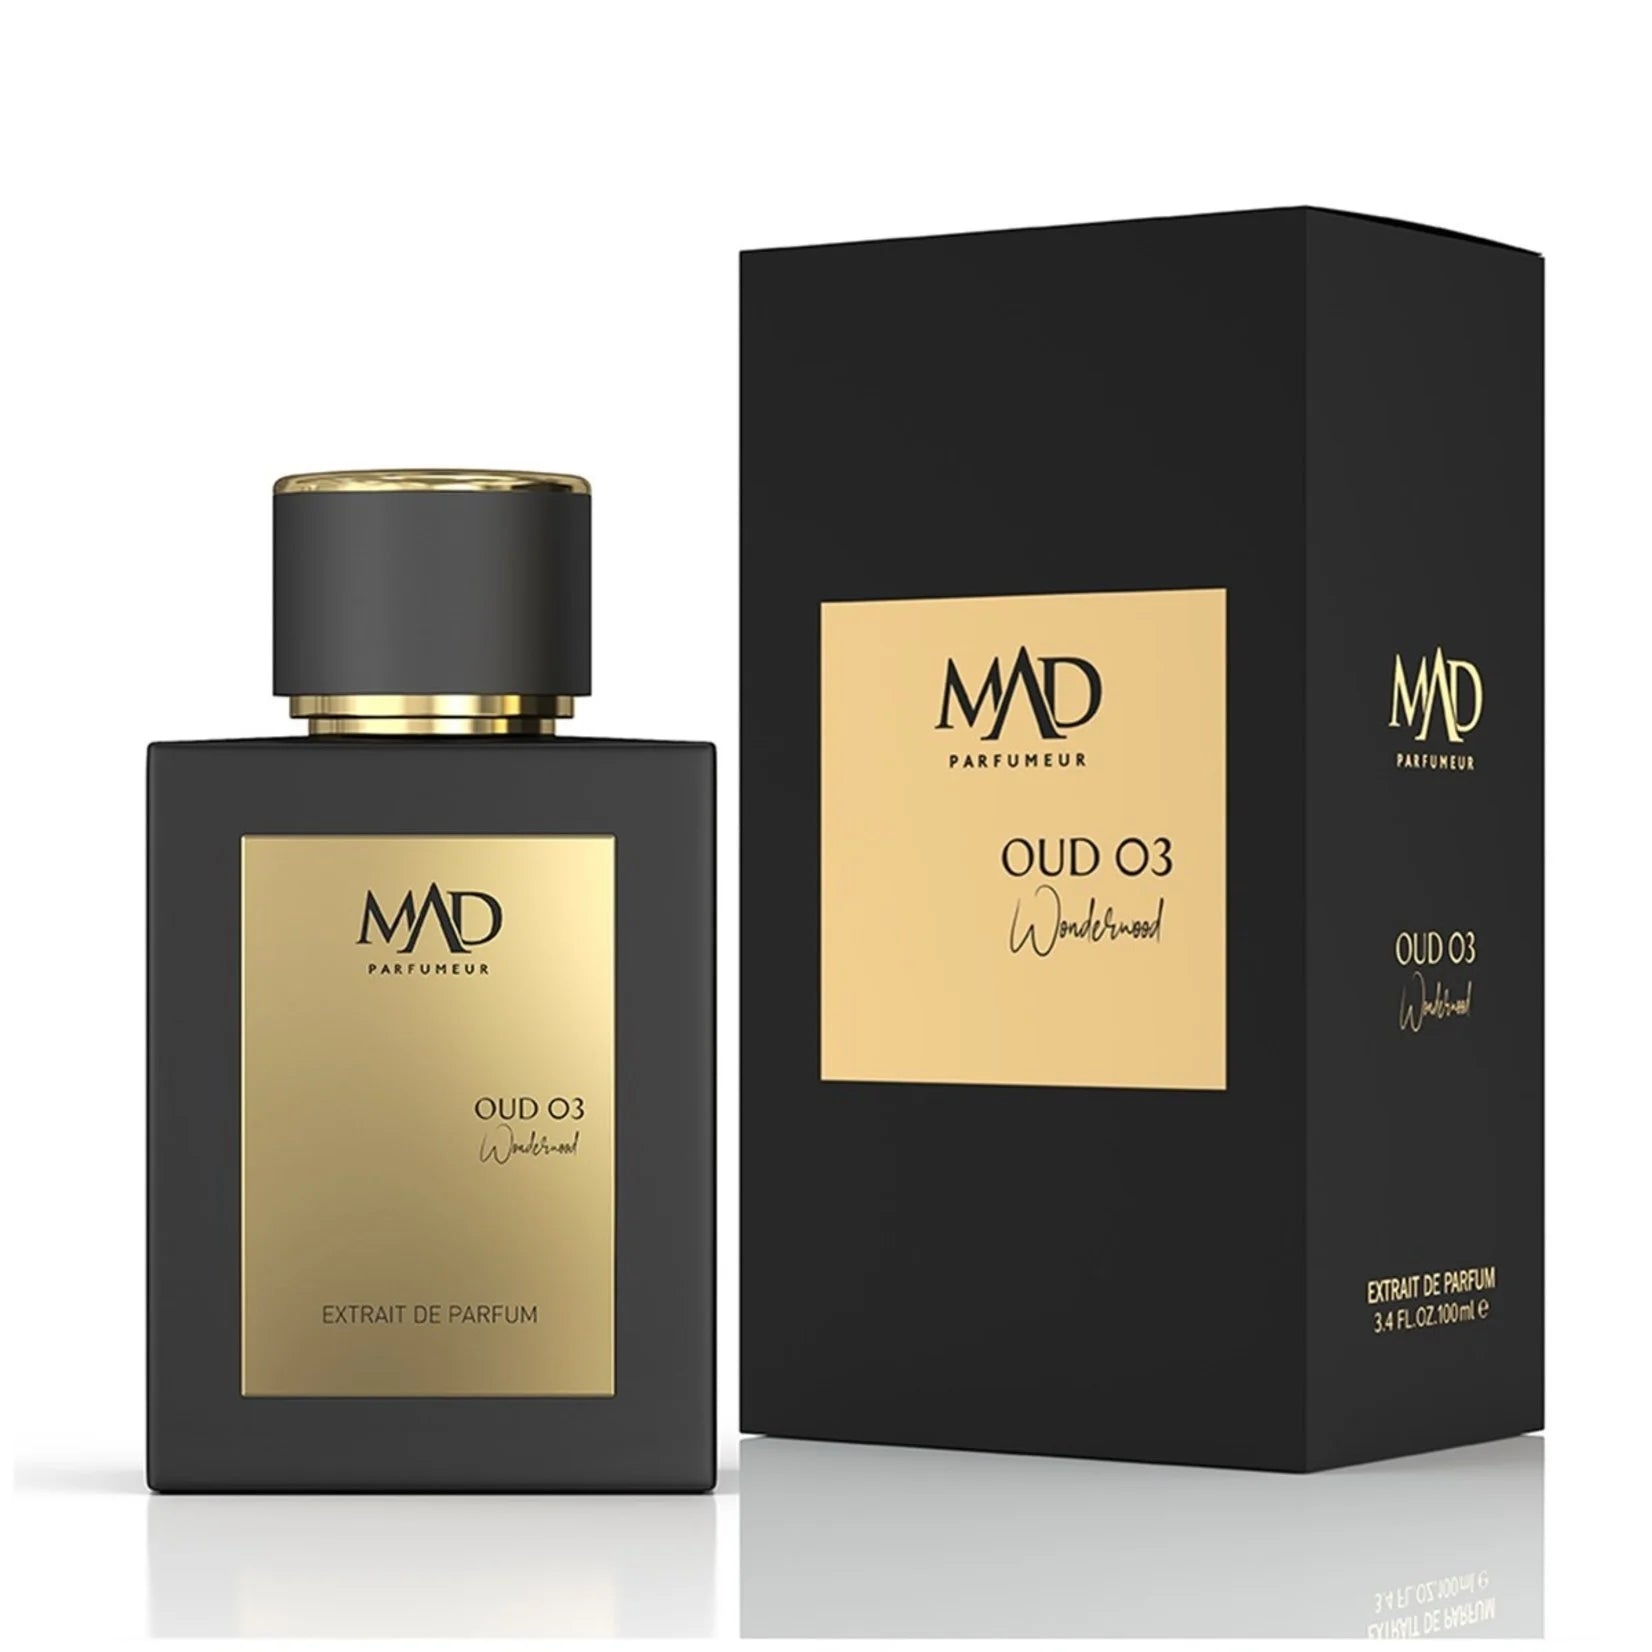 oud-03-wonderwood-100-ml-unisex.webp